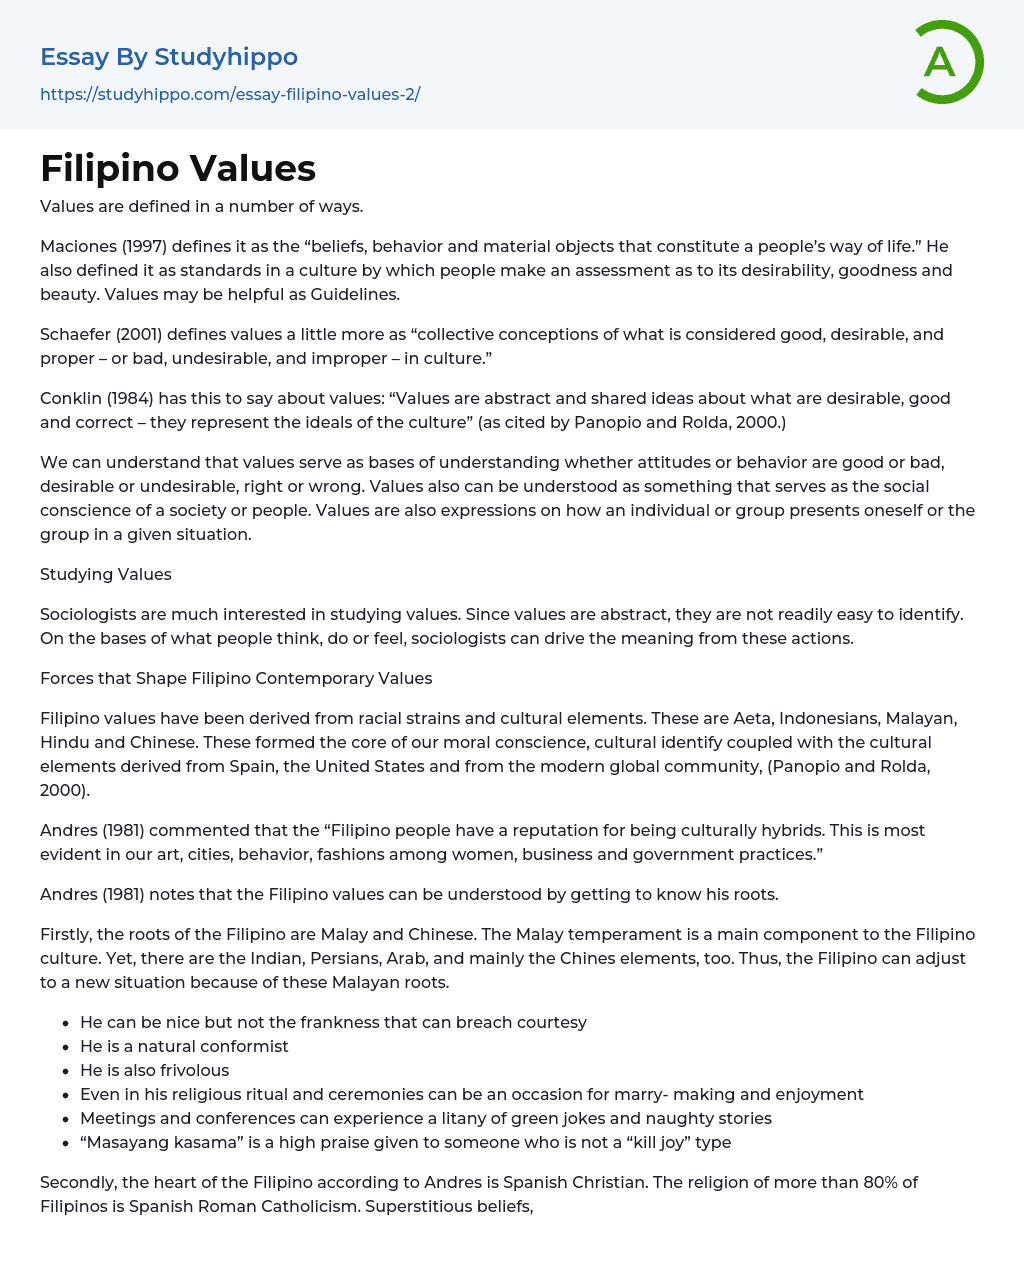 strengthening filipino family values essay